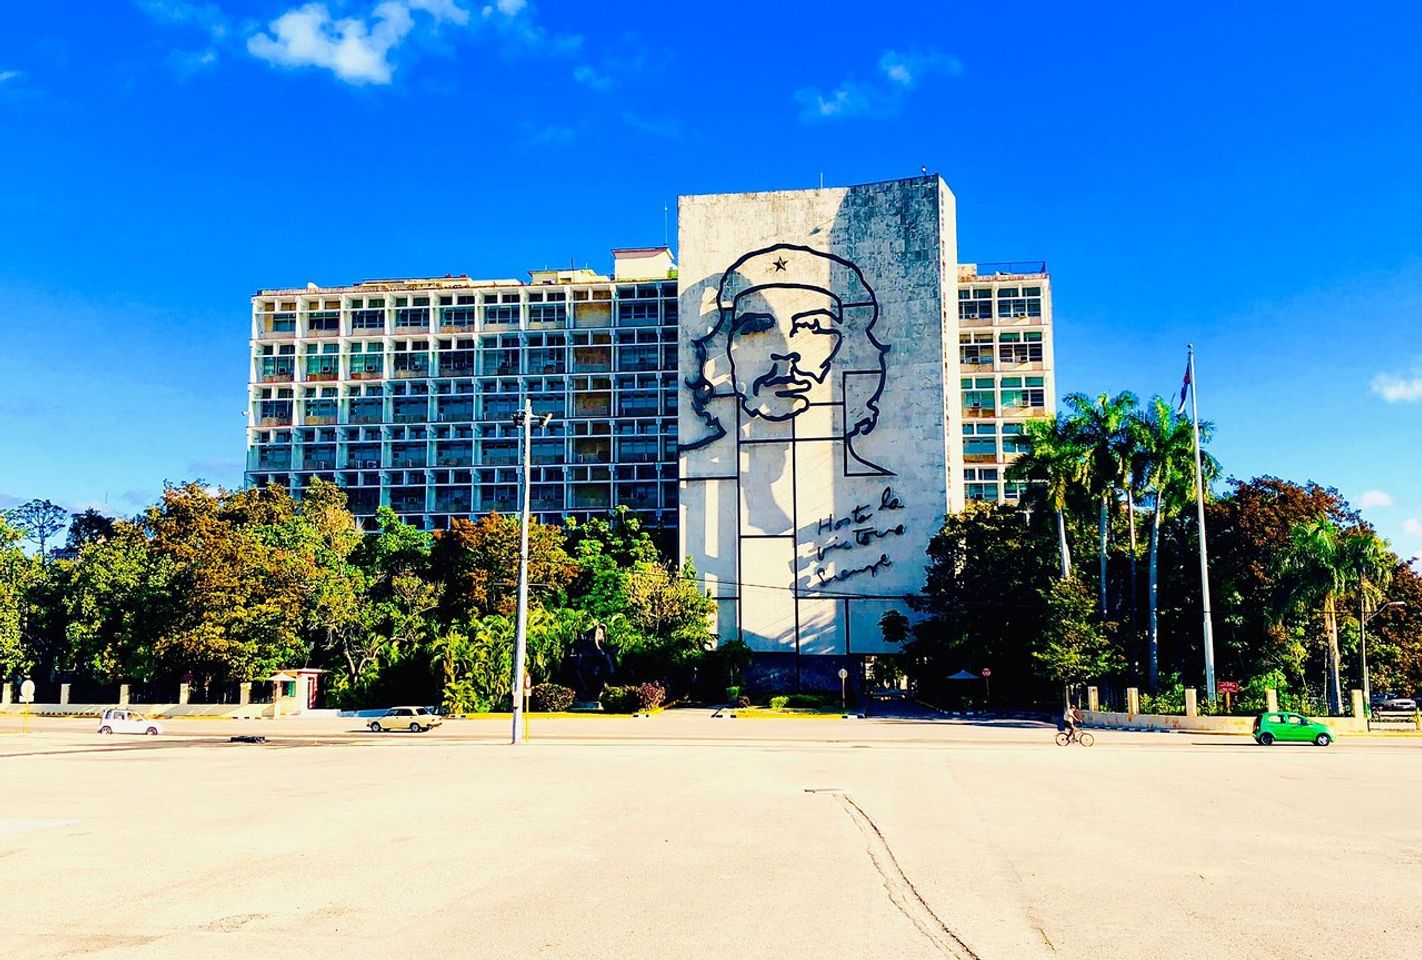 La historia revolucionaria se une a la vida moderna: Descubre la vibrante plaza de Managua.